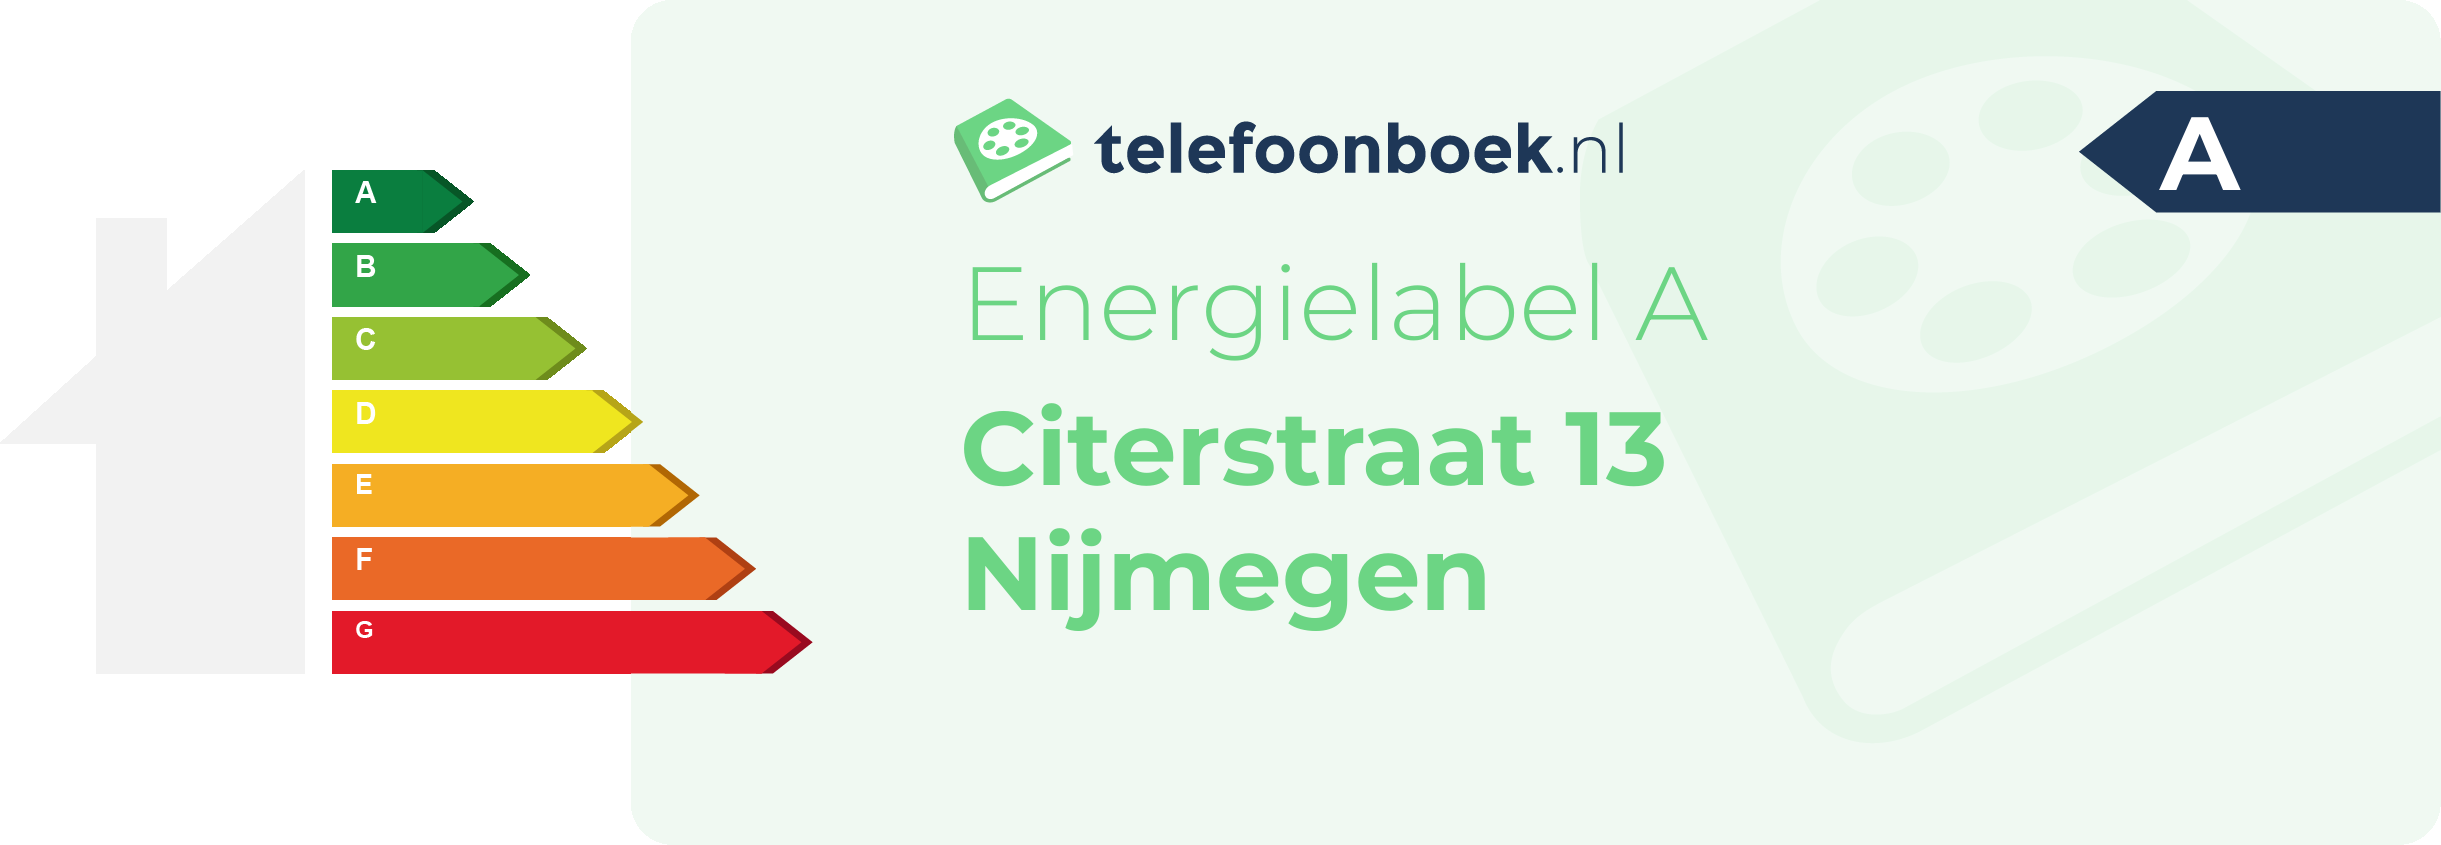 Energielabel Citerstraat 13 Nijmegen